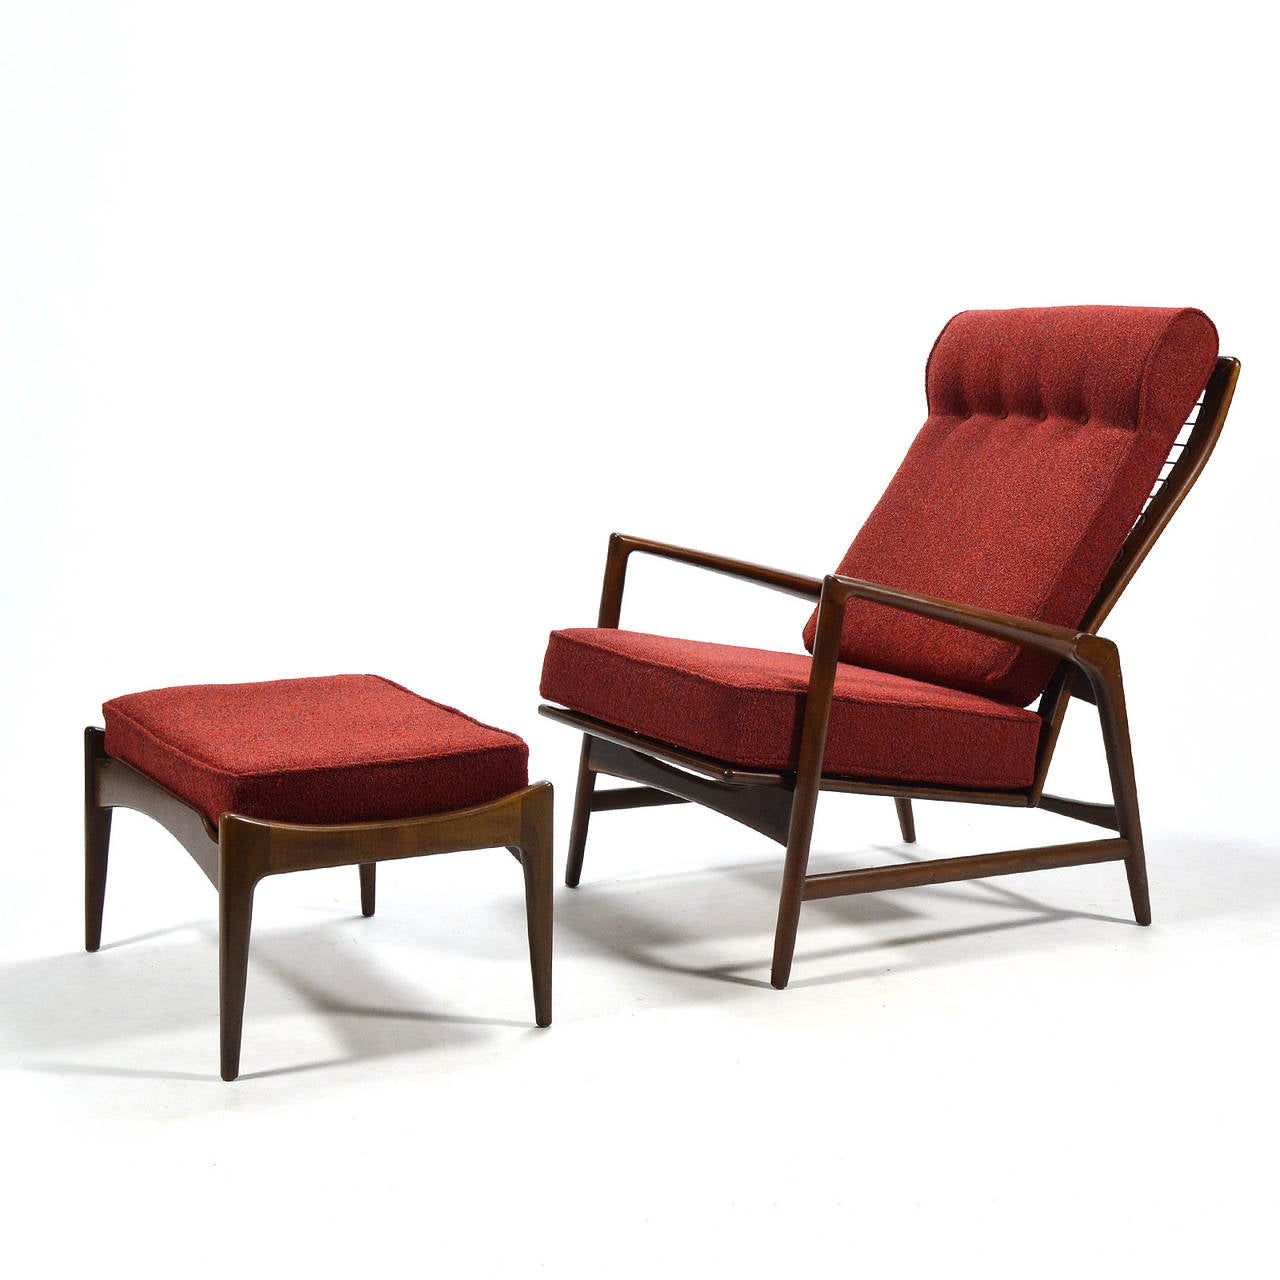 Cette chaise longue inclinable et ce pouf d'Ib Kofod-Larsen combinent des lignes sexy, un confort incroyable et une grande fonctionnalité. Le fauteuil dispose de cinq positions d'inclinaison permettant de tout faire, de la conversation à la lecture,